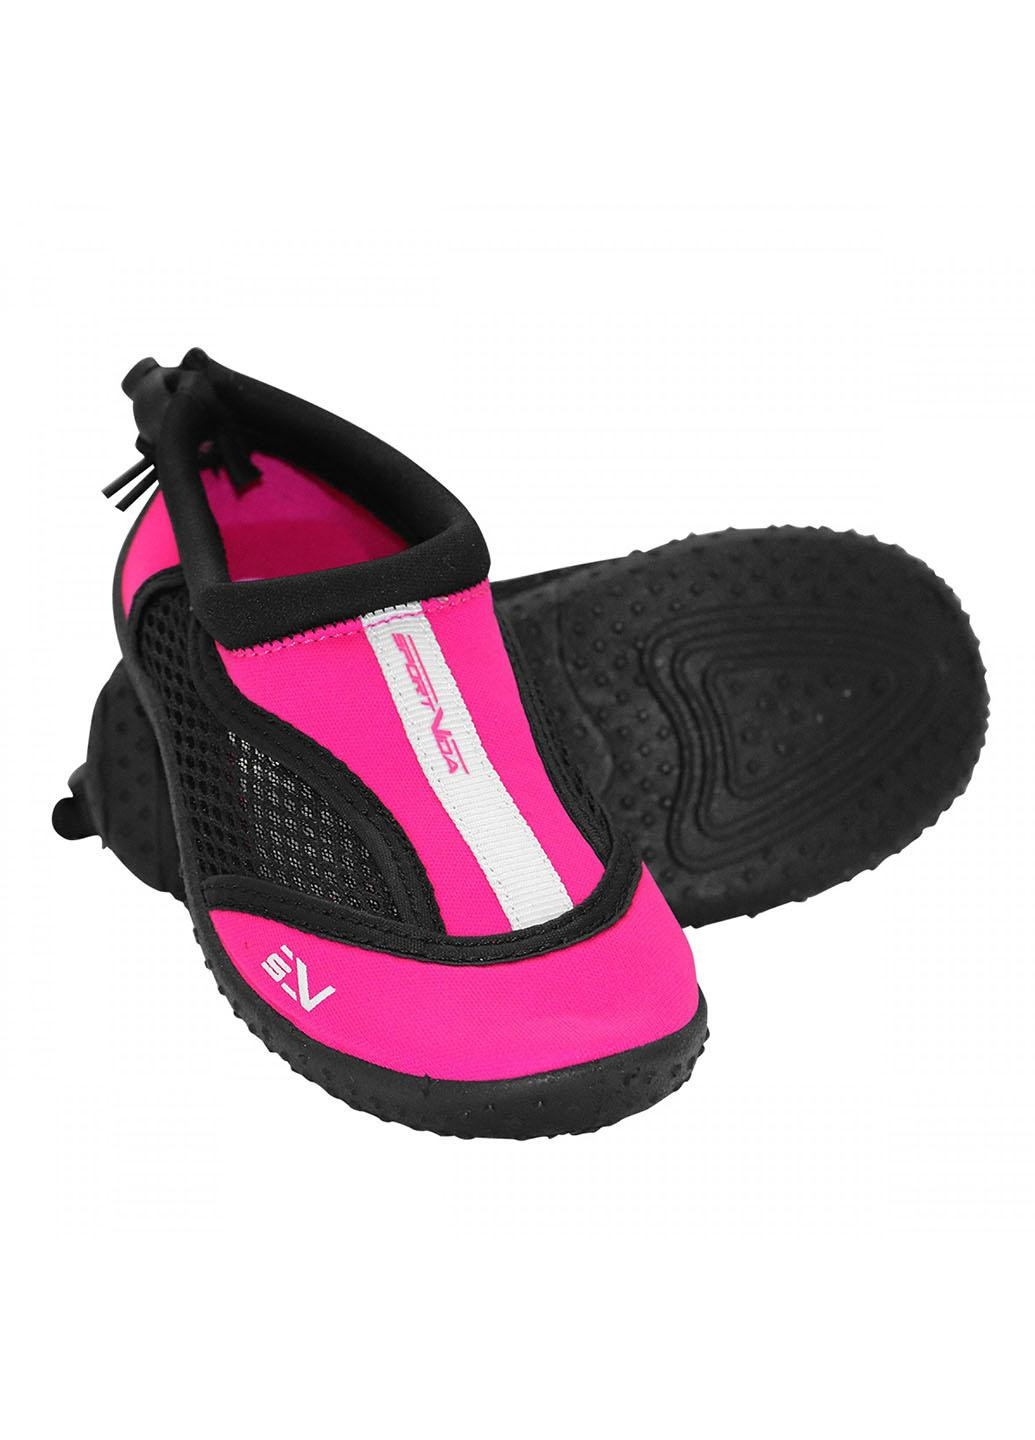 Обувь для пляжа и кораллов (аквашуз) SV-GY0001-R30 Size 30 Black/Pink SportVida (258486778)